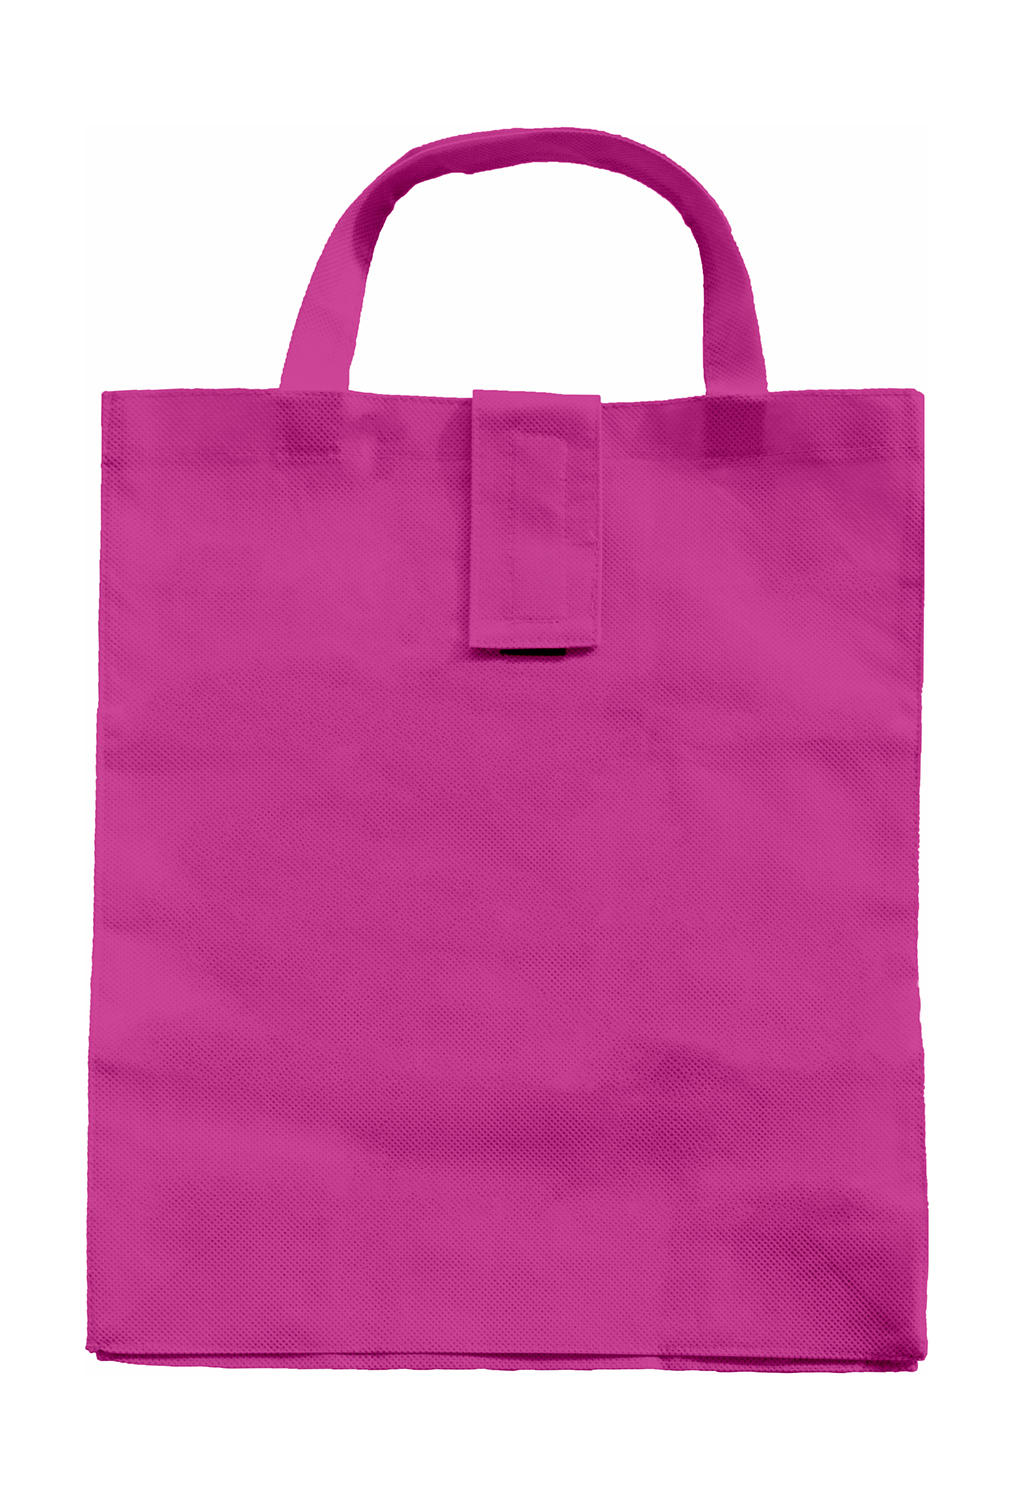 SG ACCESSORIES - BAGS Folding Shopper SH